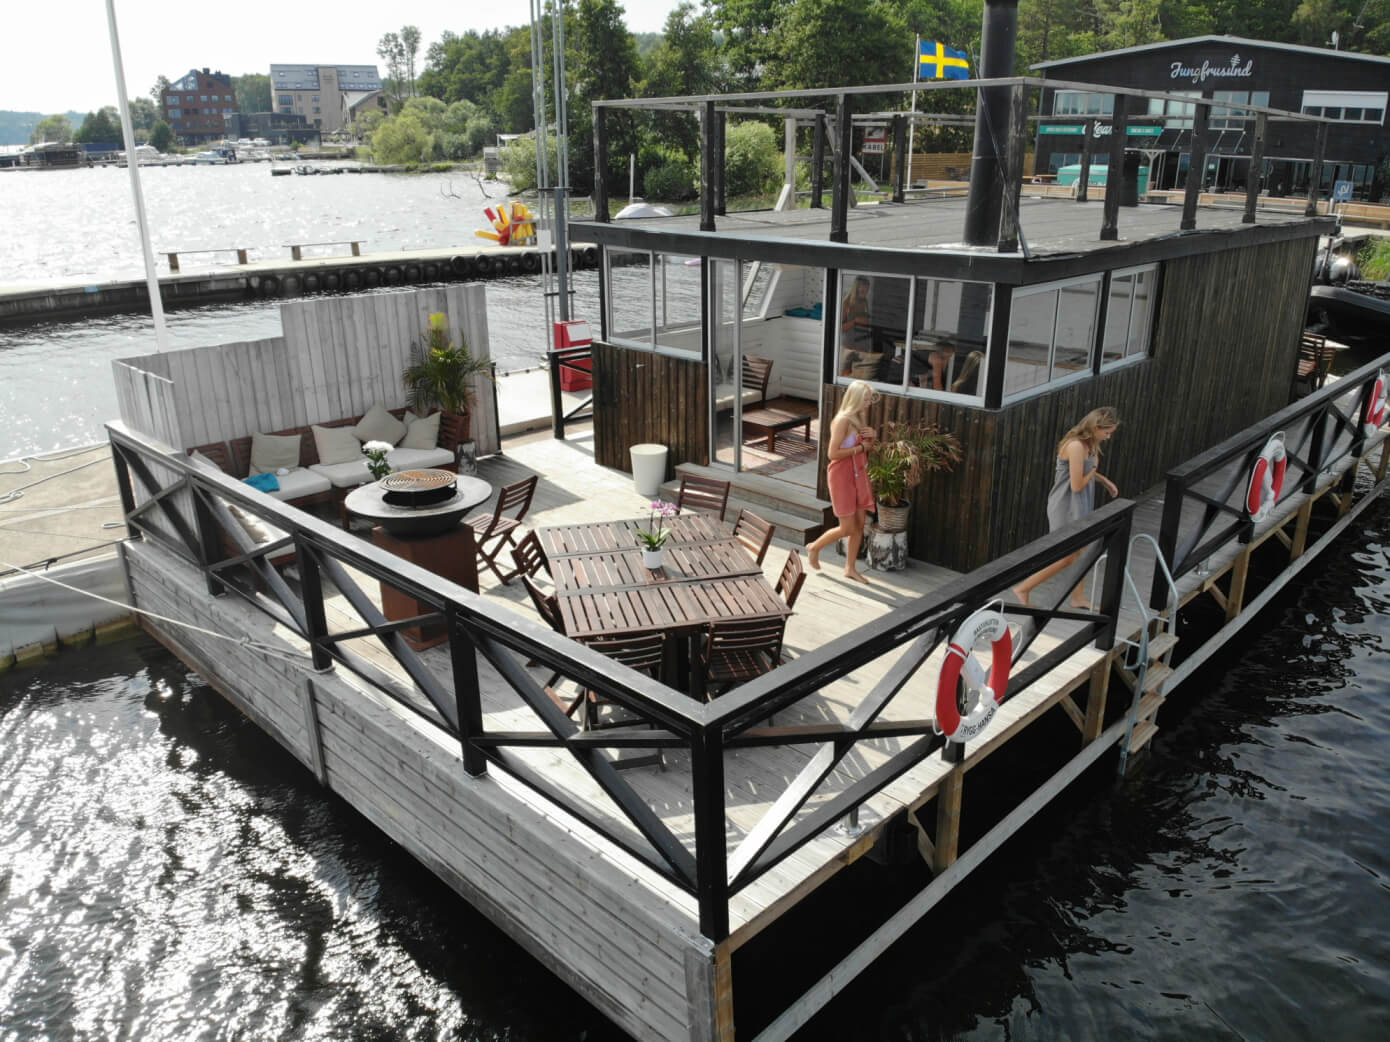 Styr upp en möhippa på Stockholms största bastuflotte